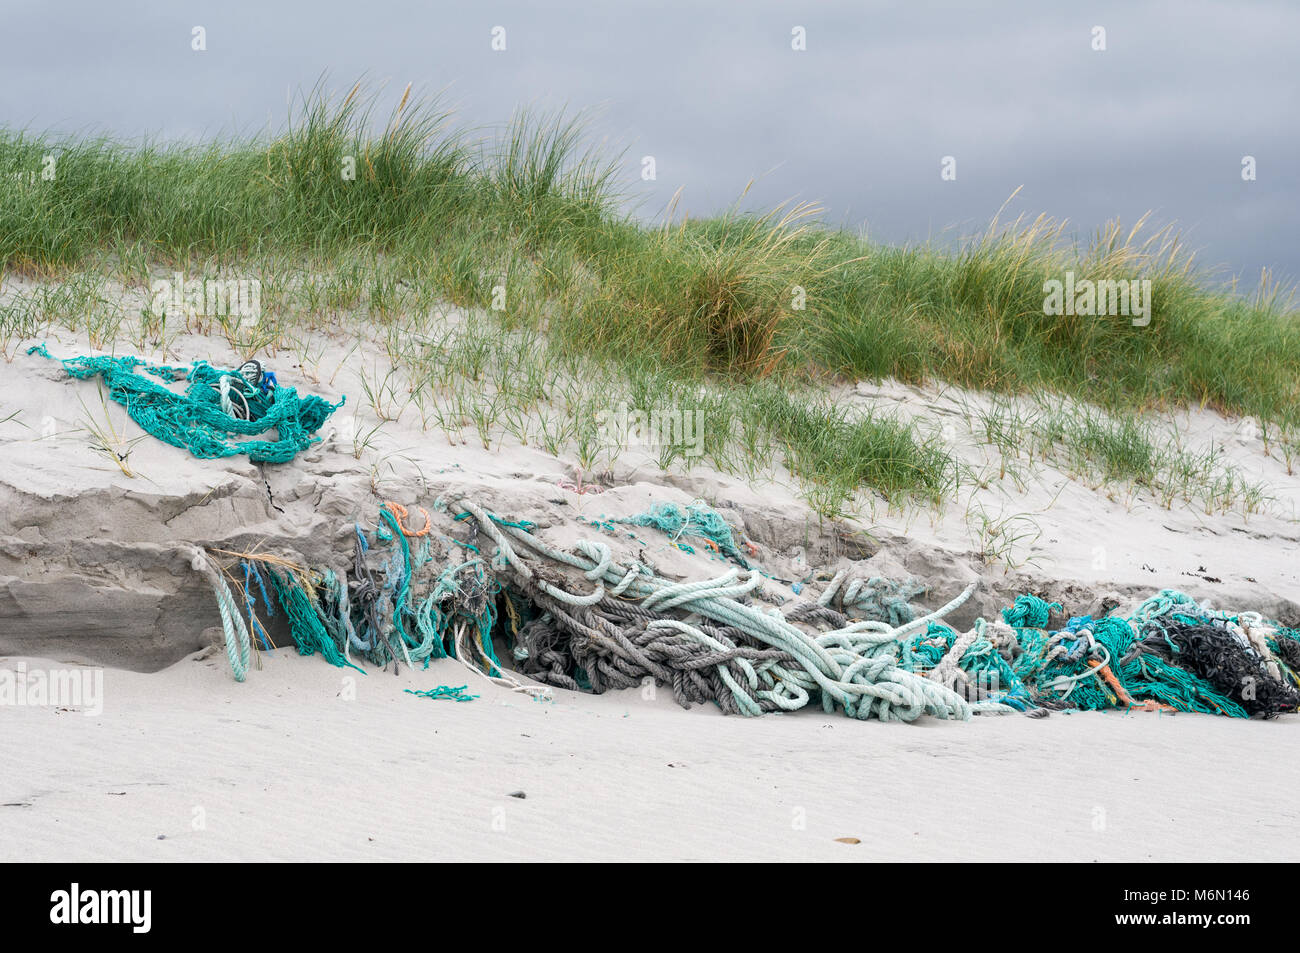 Cordes et filets de pêche abandonné et pris dans la plage et des dunes de sable sur Howmore Beach, South Uist, îles Hébrides, Ecosse, Royaume-Uni Banque D'Images